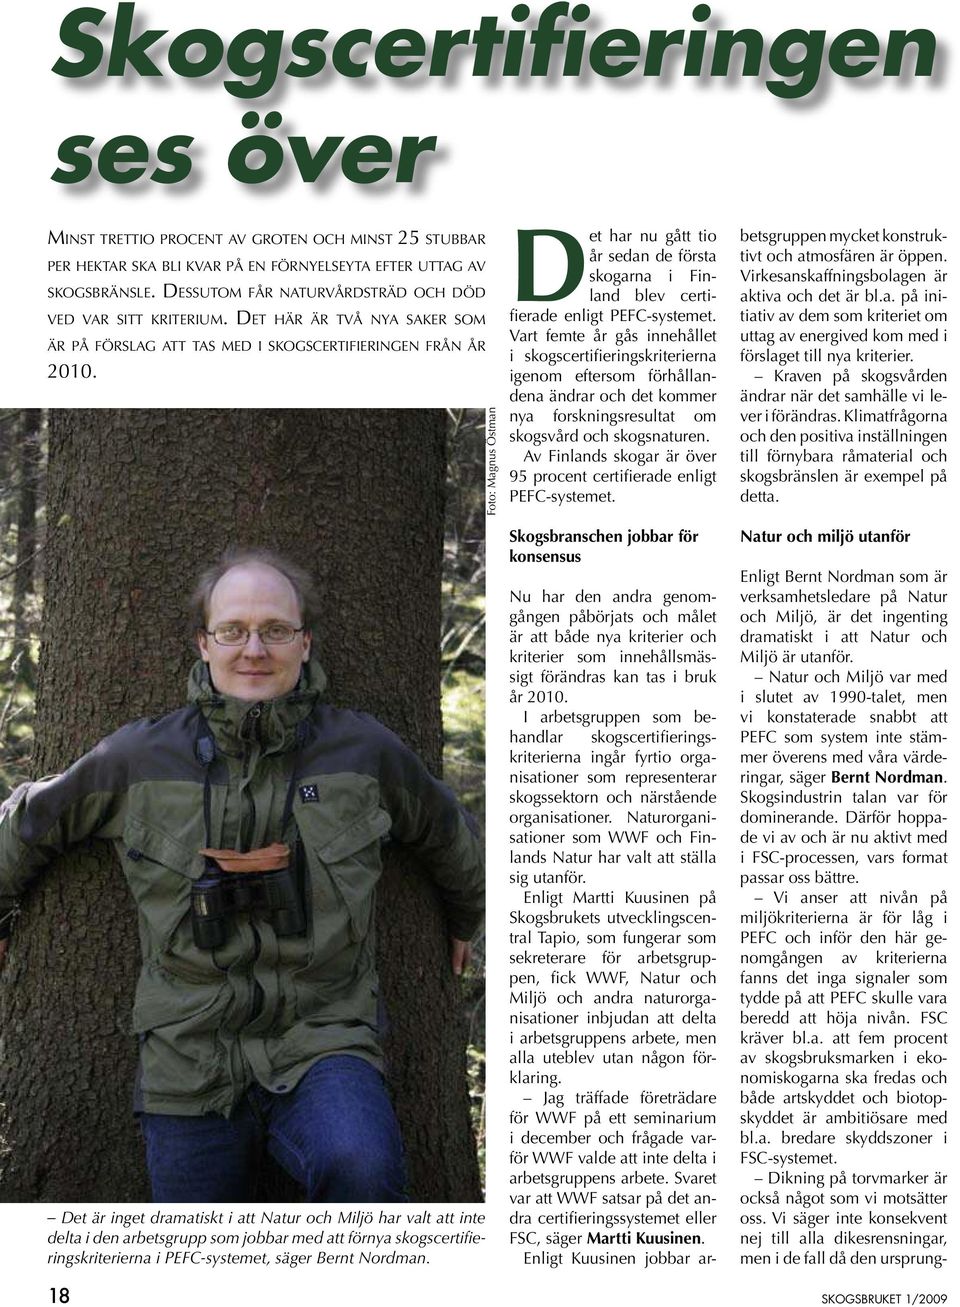 Det är inget dramatiskt i att Natur och Miljö har valt att inte delta i den arbetsgrupp som jobbar med att förnya skogscertifieringskriterierna i PEFC-systemet, säger Bernt Nordman.